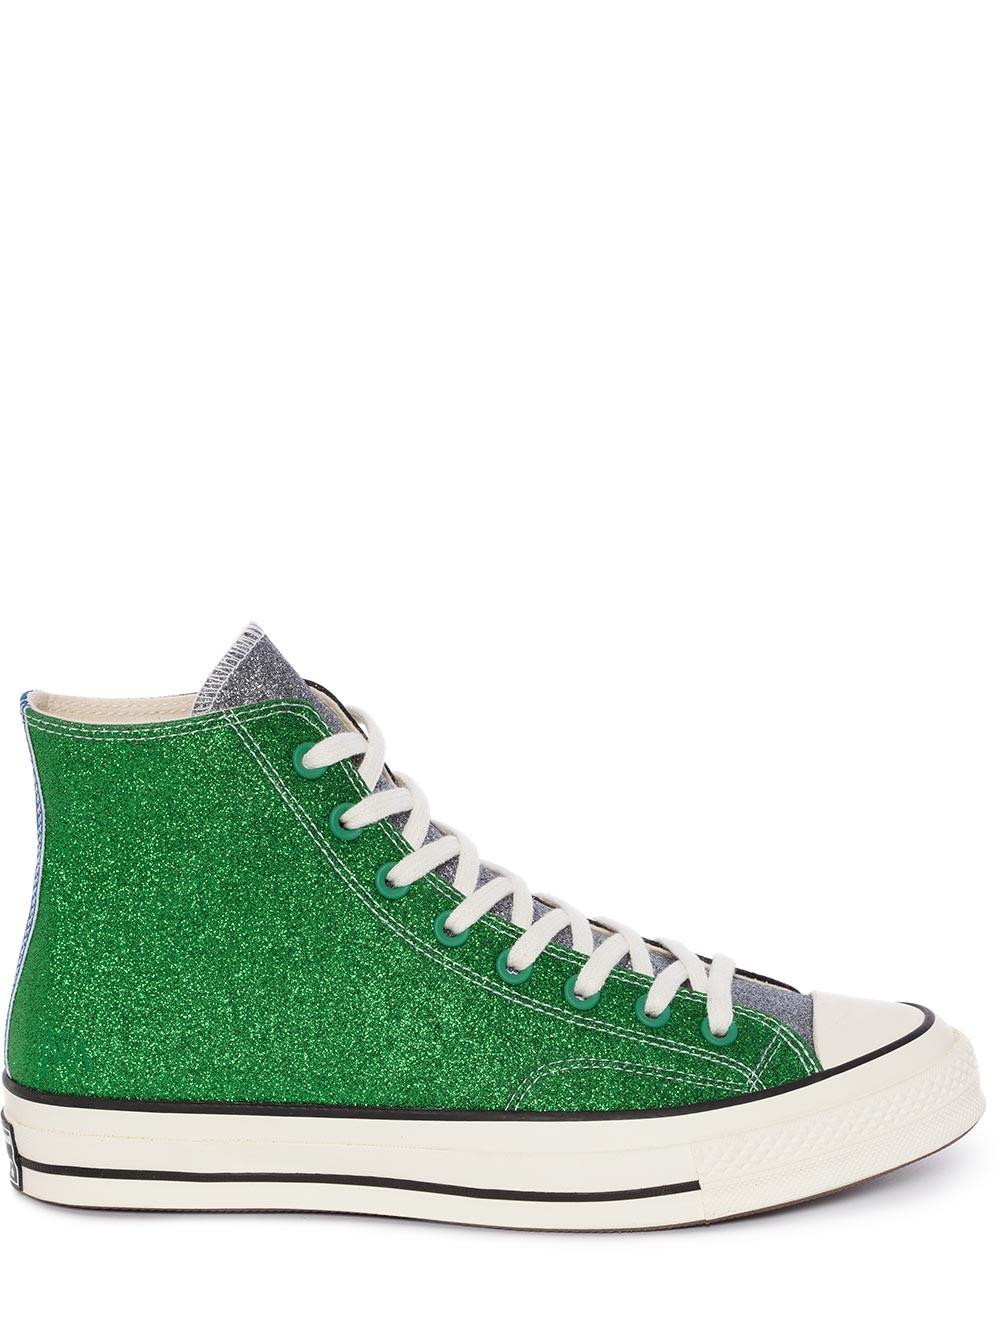 green sparkly converse